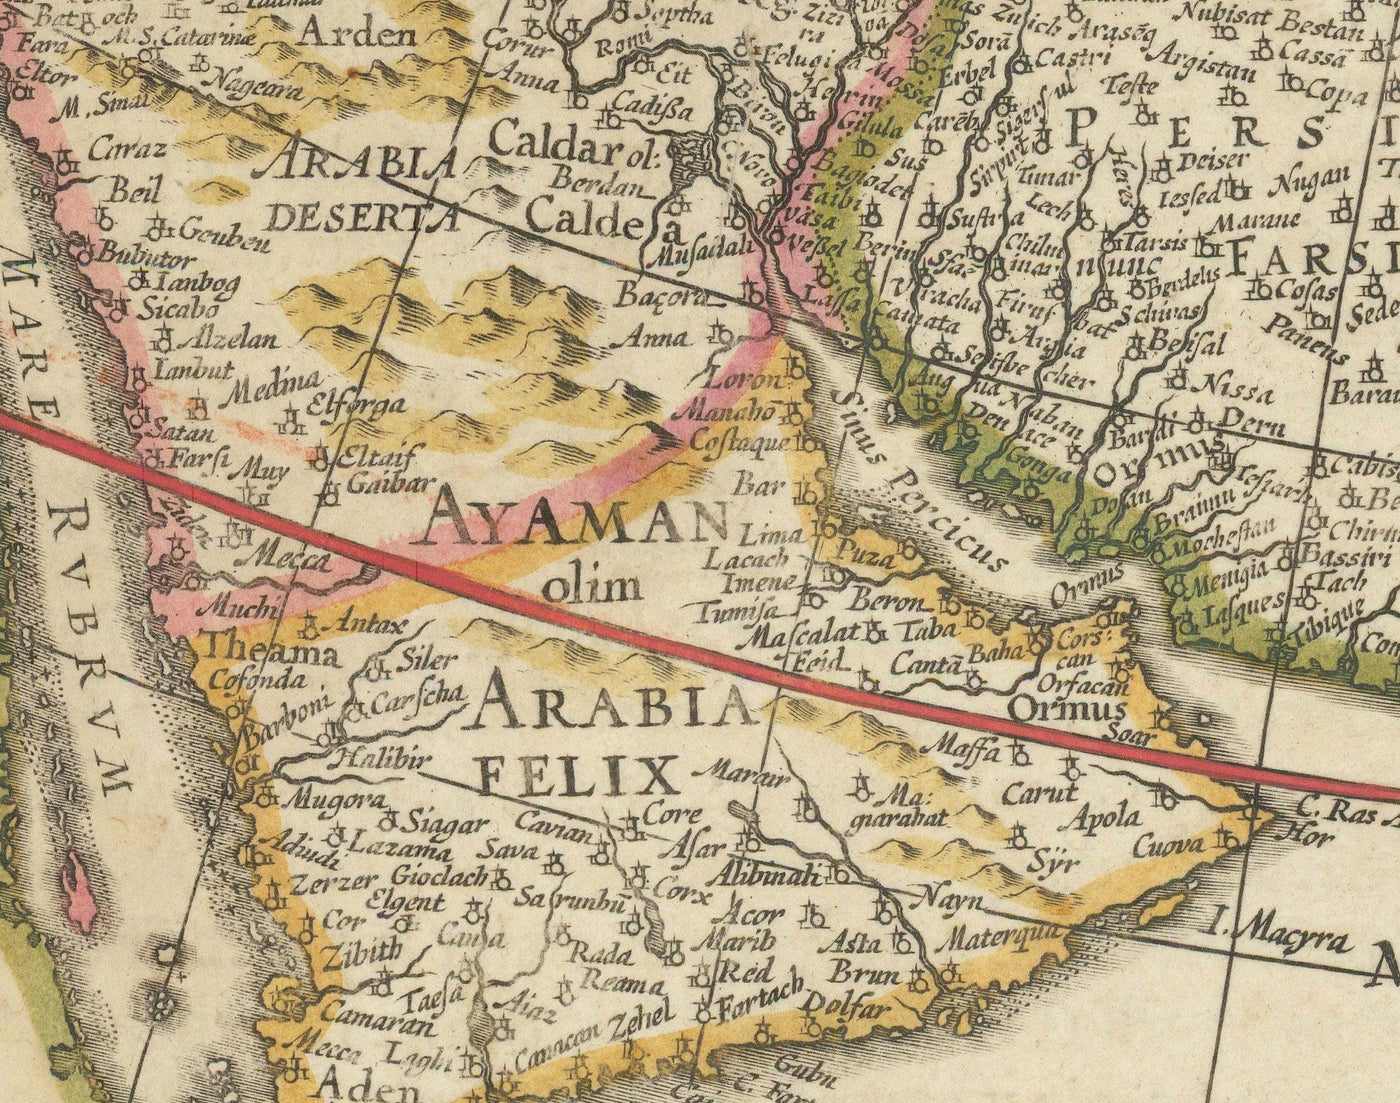 Alte Karte von Asien, 1640 von Willem Blaeu - Koloniale Ostindien - China, Indien, Malaysia, Singapur, Thailand, Philippinen